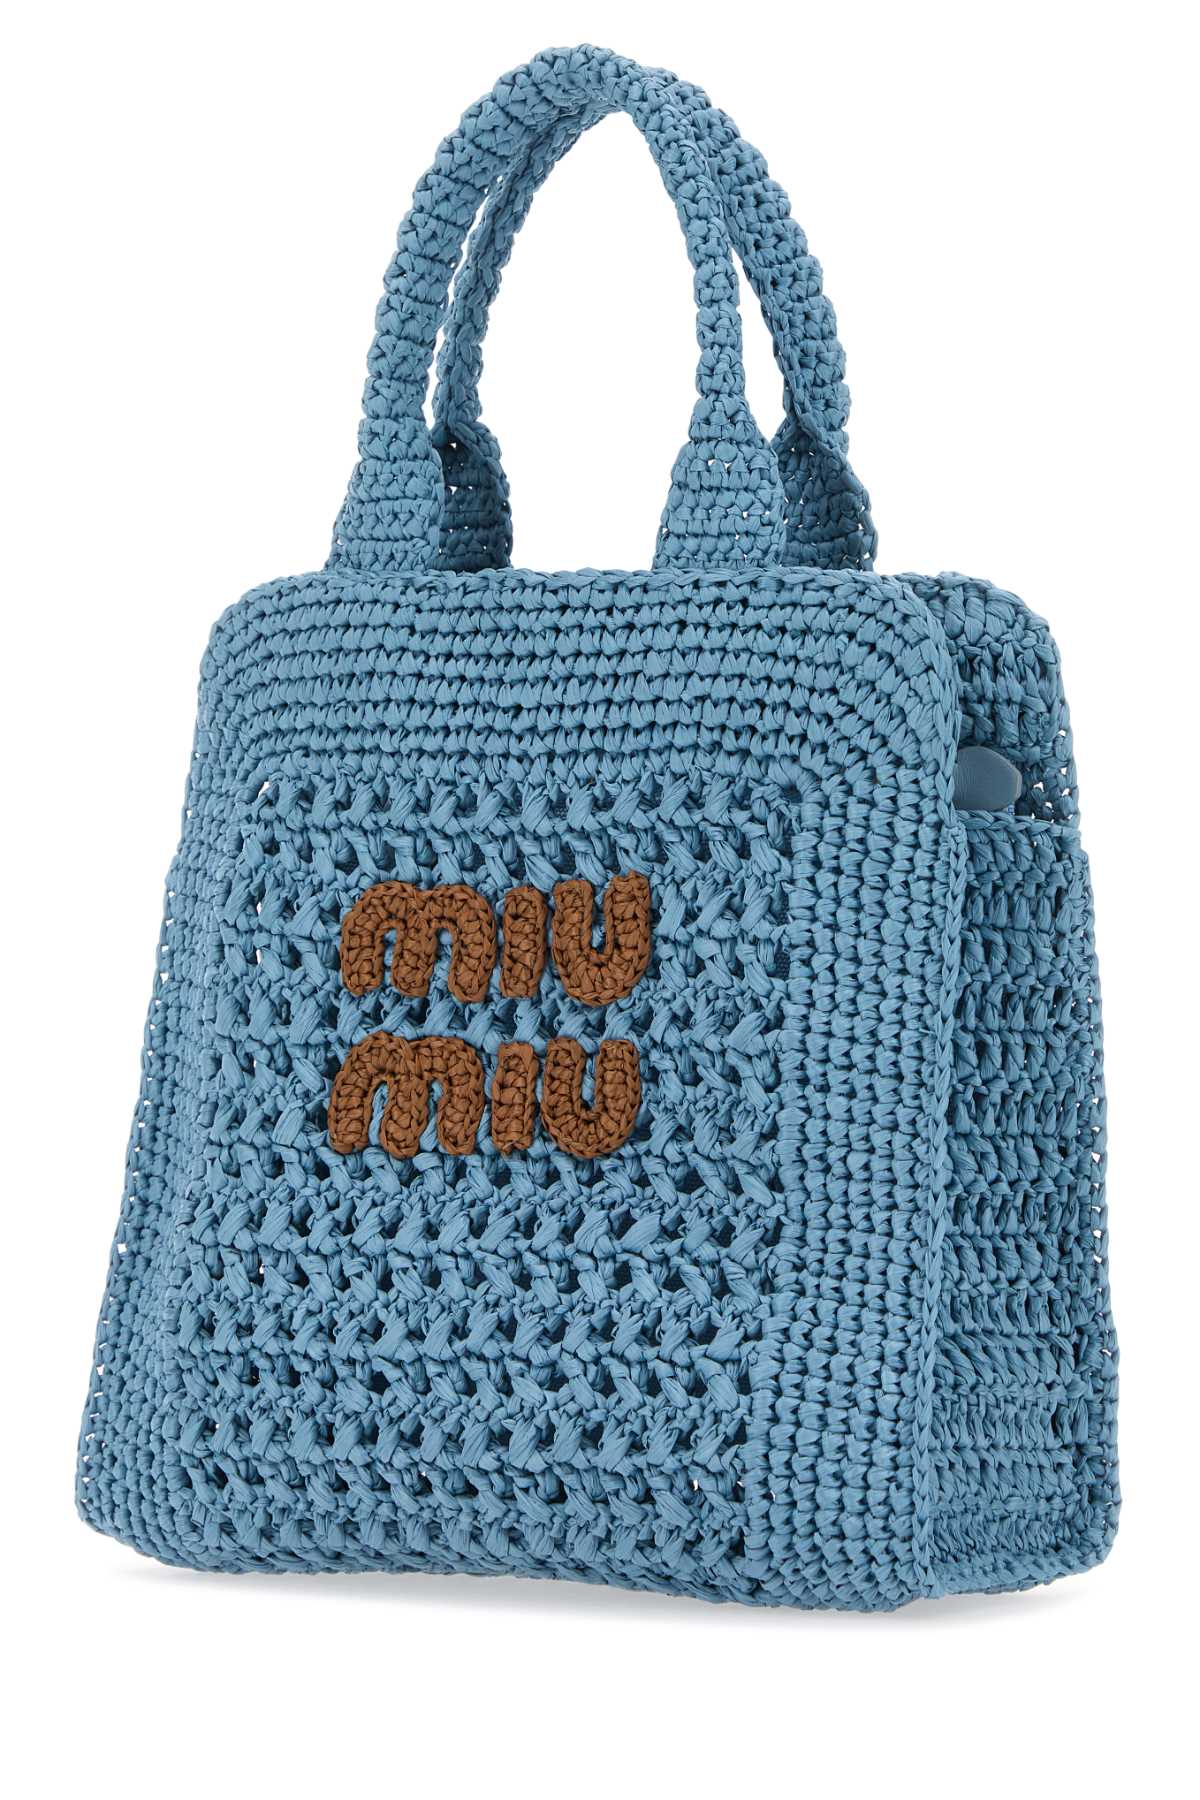 Miu Miu Light Blue Crochet Handbag In Celestecognac